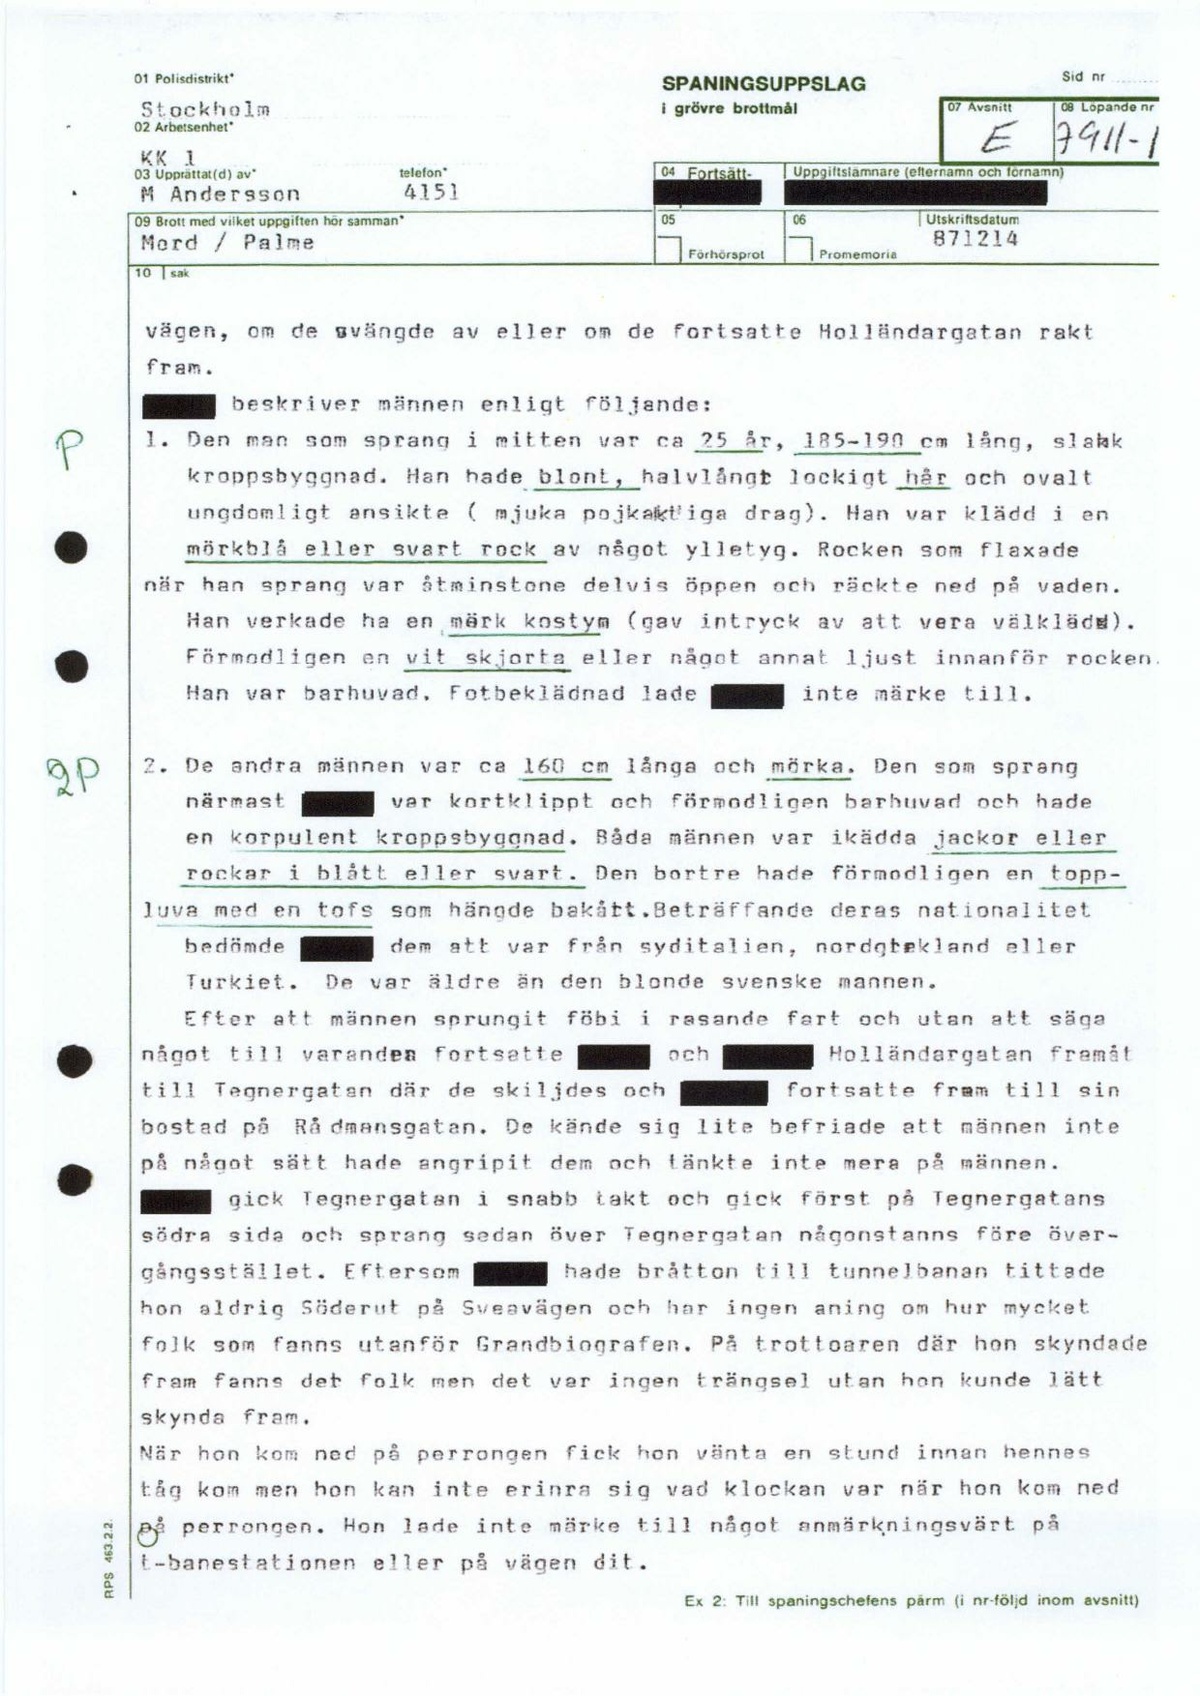 Pol-1987-12-14 1130 EBC7911-01 Anna-Brita Allén.pdf